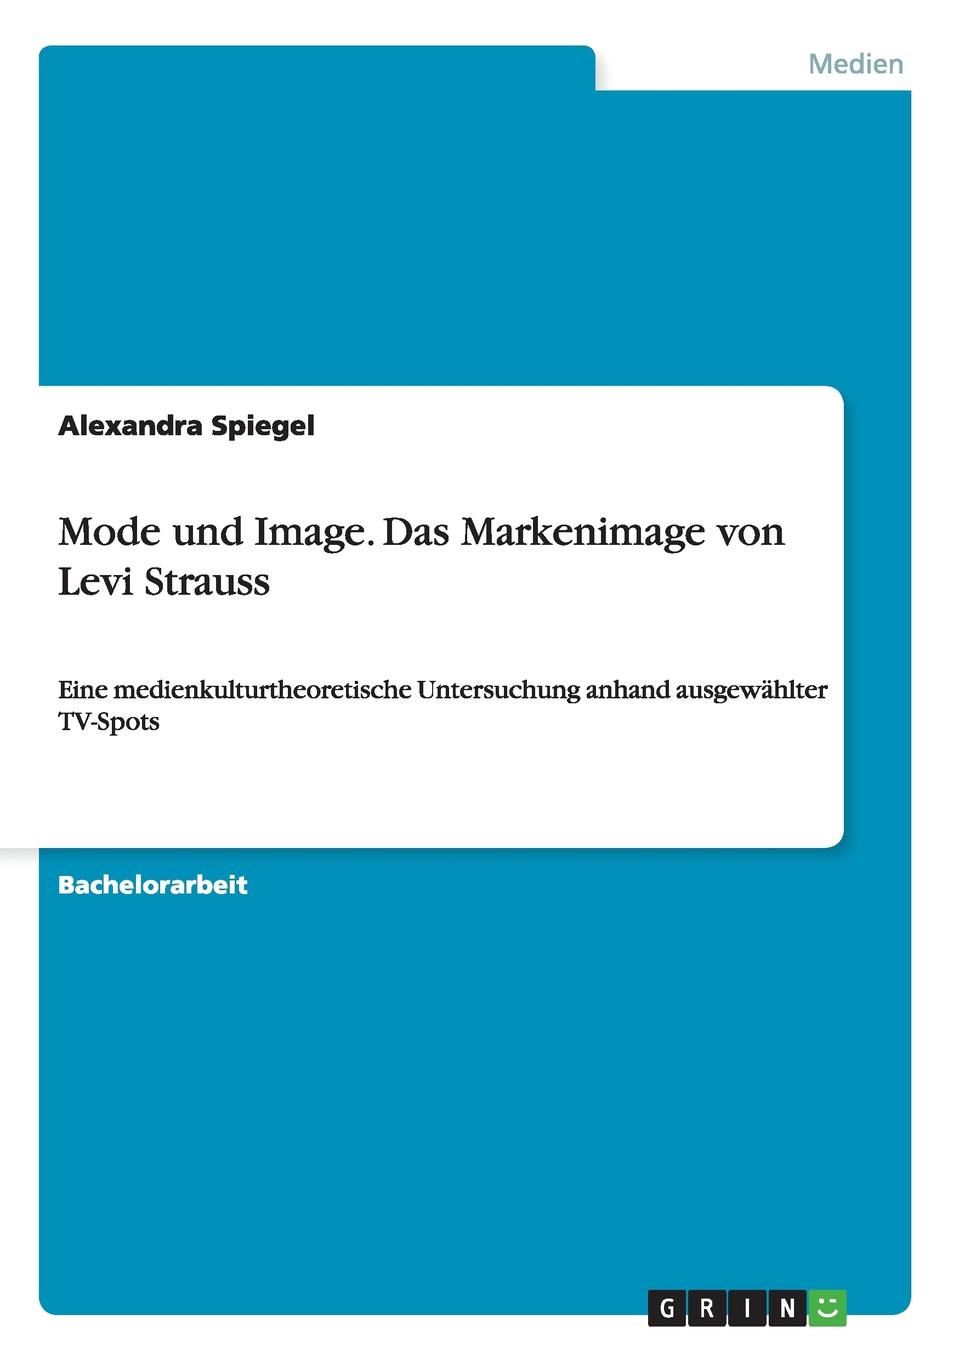 Alexandra Spiegel Mode und Image. Das Markenimage von Levi Strauss